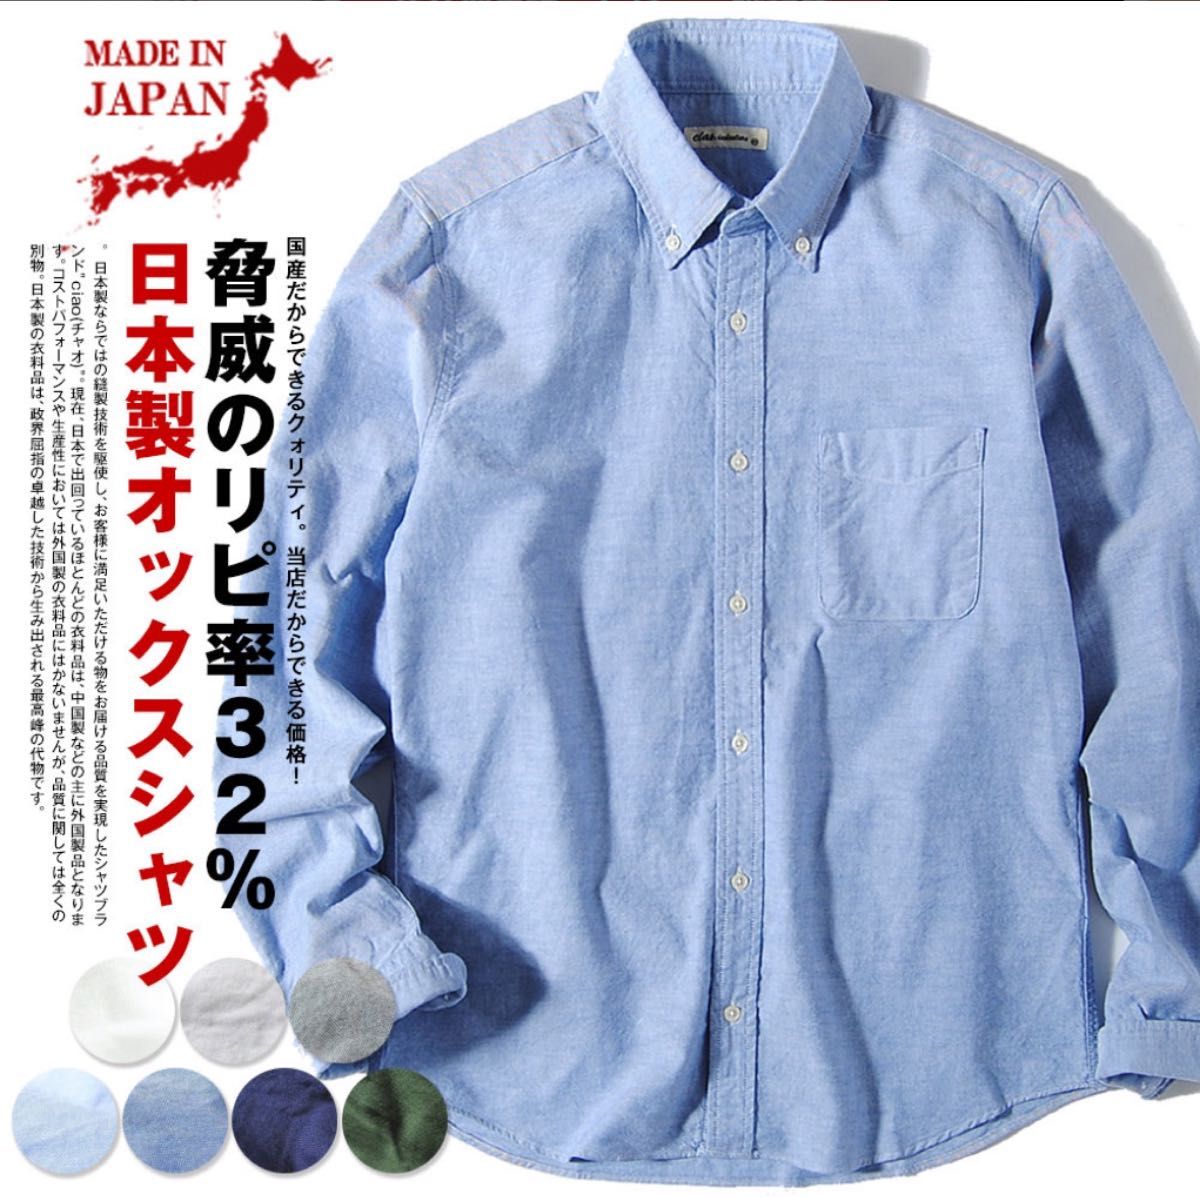 シャツ 無地 オックスフォードシャツ メンズ 国産 長袖シャツ ciaoチャオ 日本製 着丈短め 春服 春用